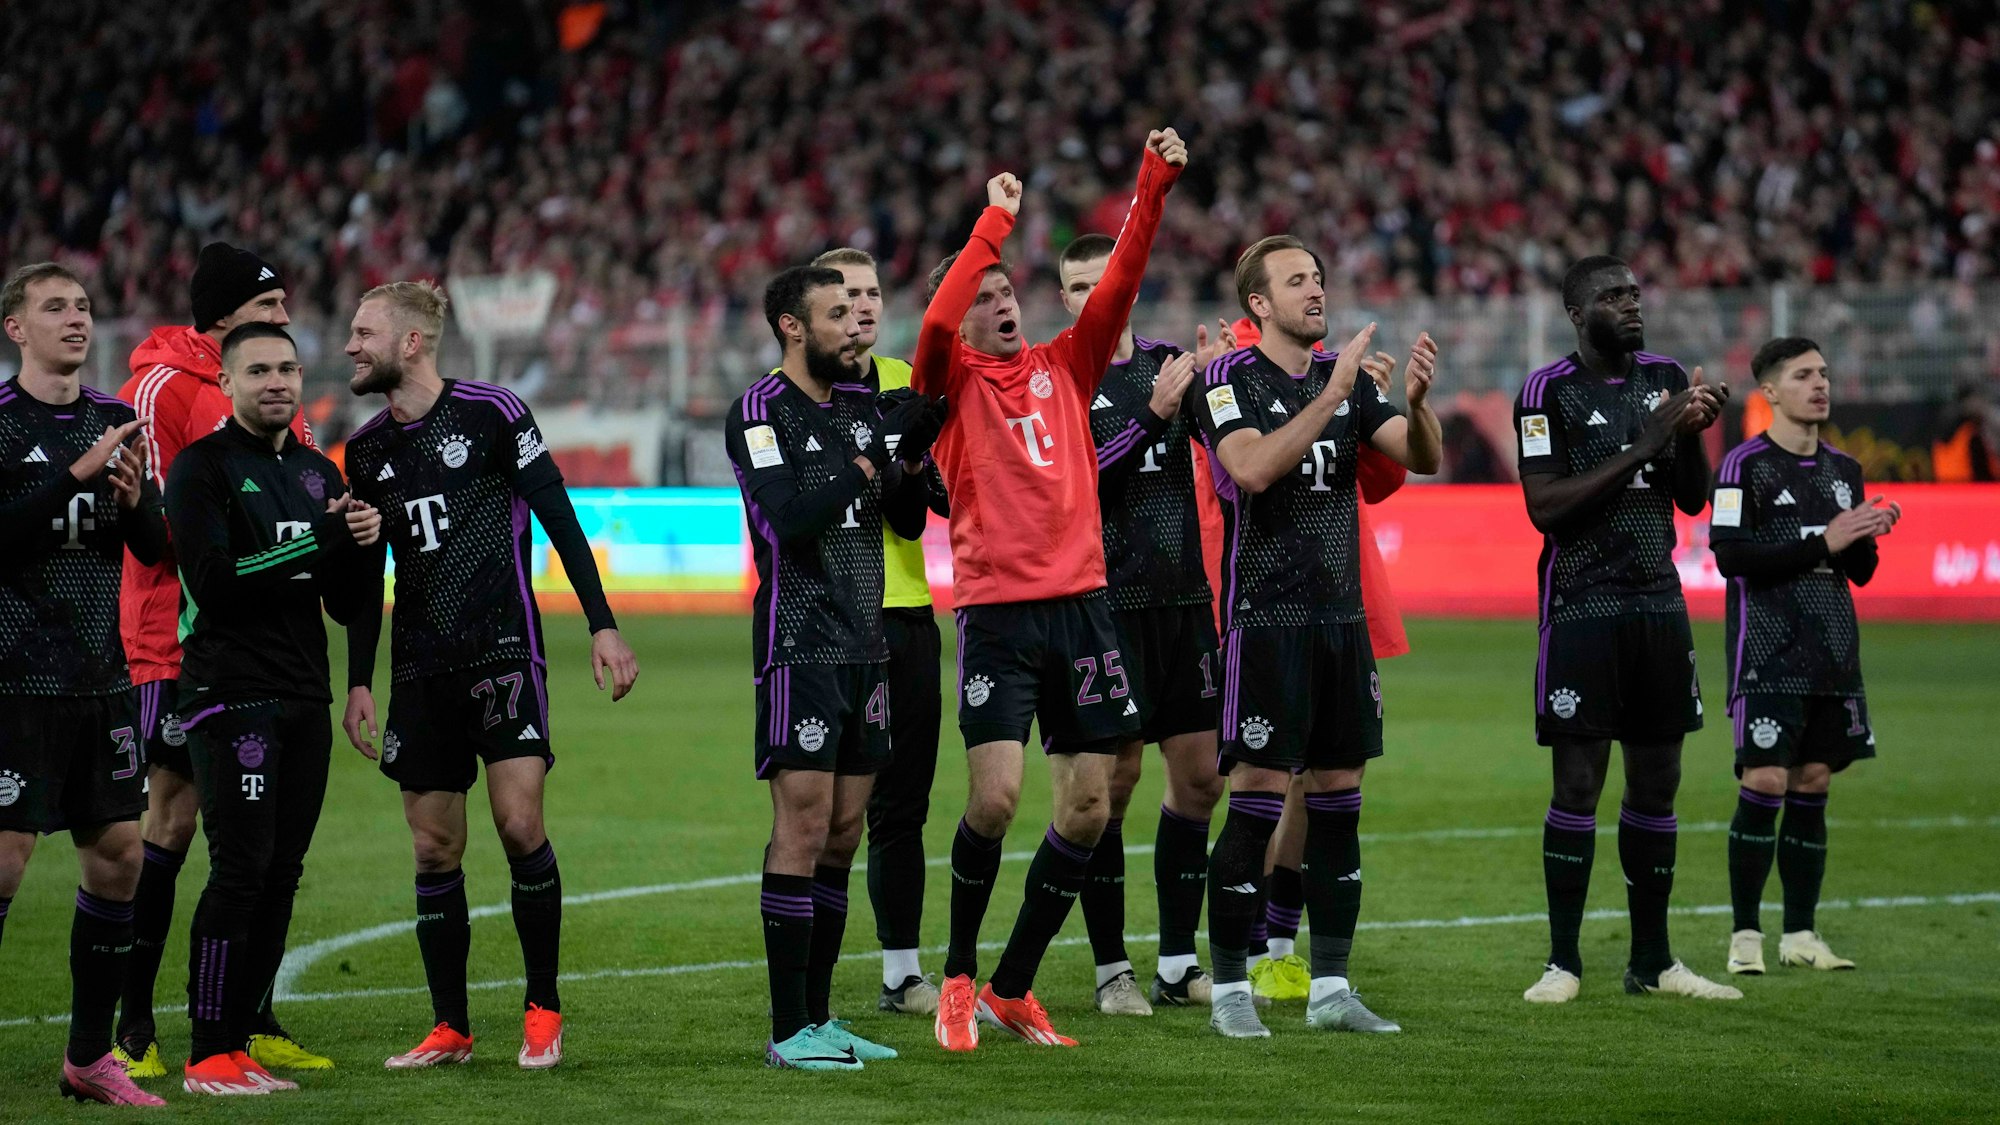 Die Spieler des FC Bayern München feiern einen Sieg.